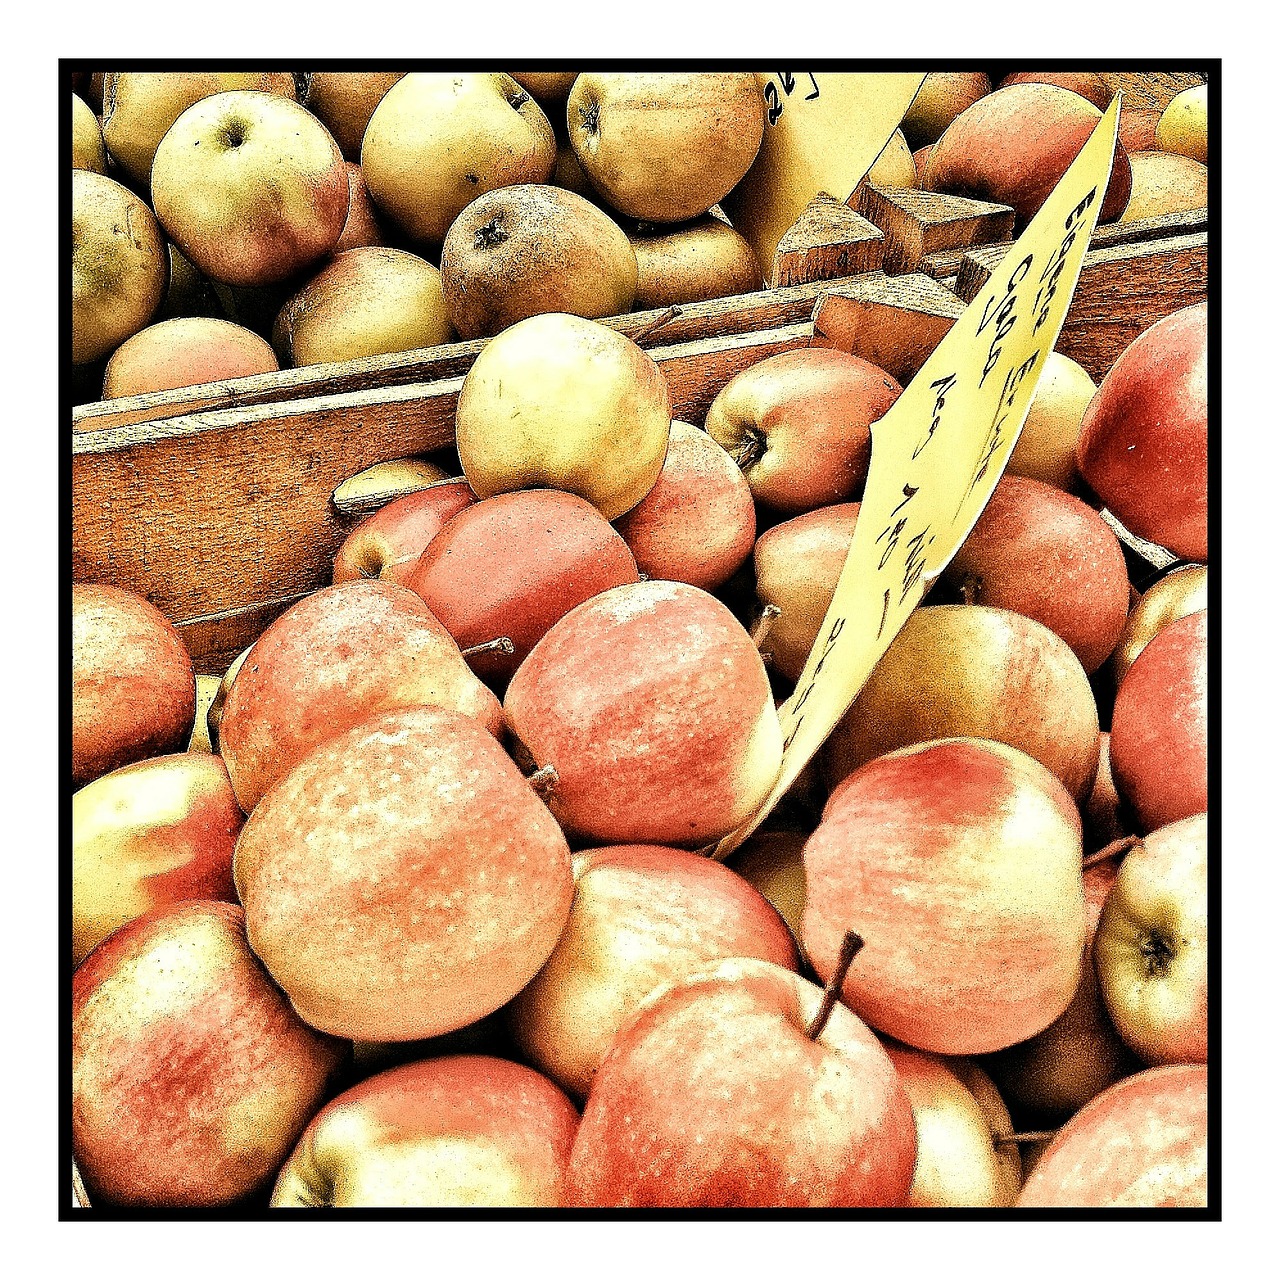 apple fruit market free photo